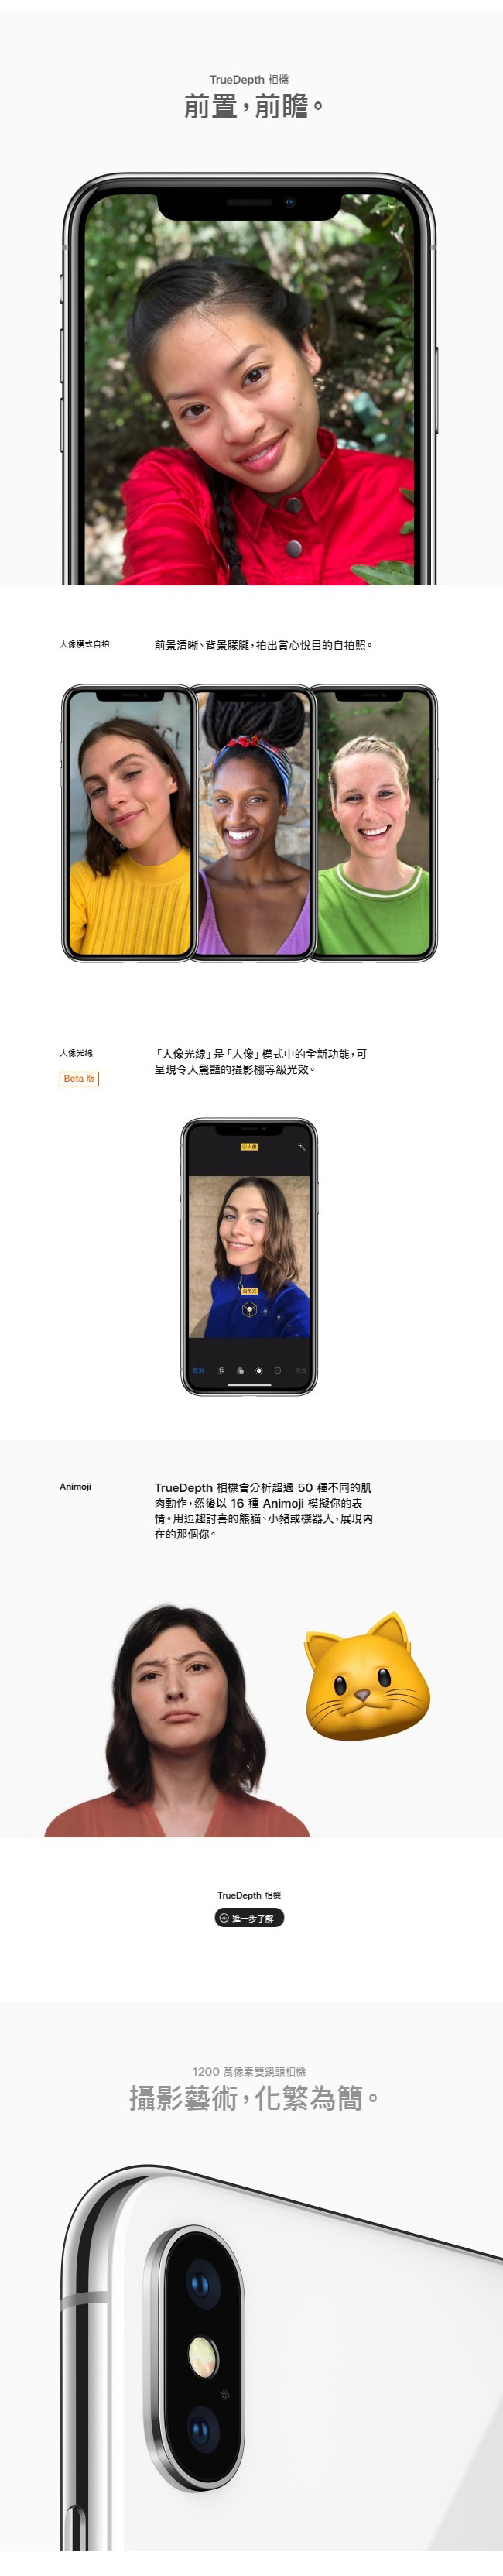 【官方認證福利品】Apple iPhone X 256G 5.8吋智慧型手機